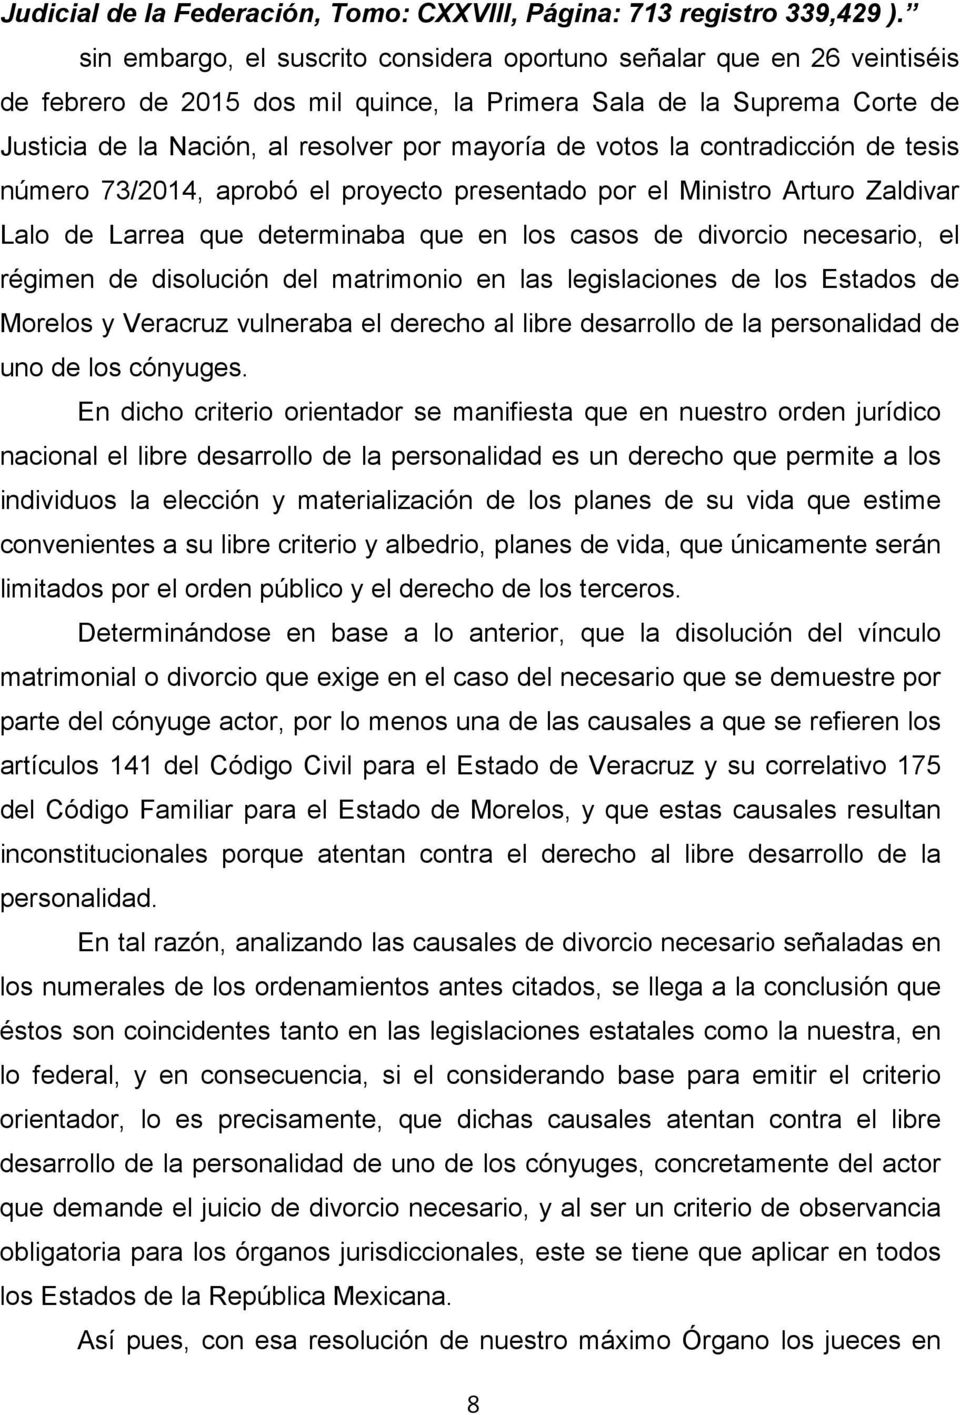 votos la contradicción de tesis número 73/2014, aprobó el proyecto presentado por el Ministro Arturo Zaldivar Lalo de Larrea que determinaba que en los casos de divorcio necesario, el régimen de